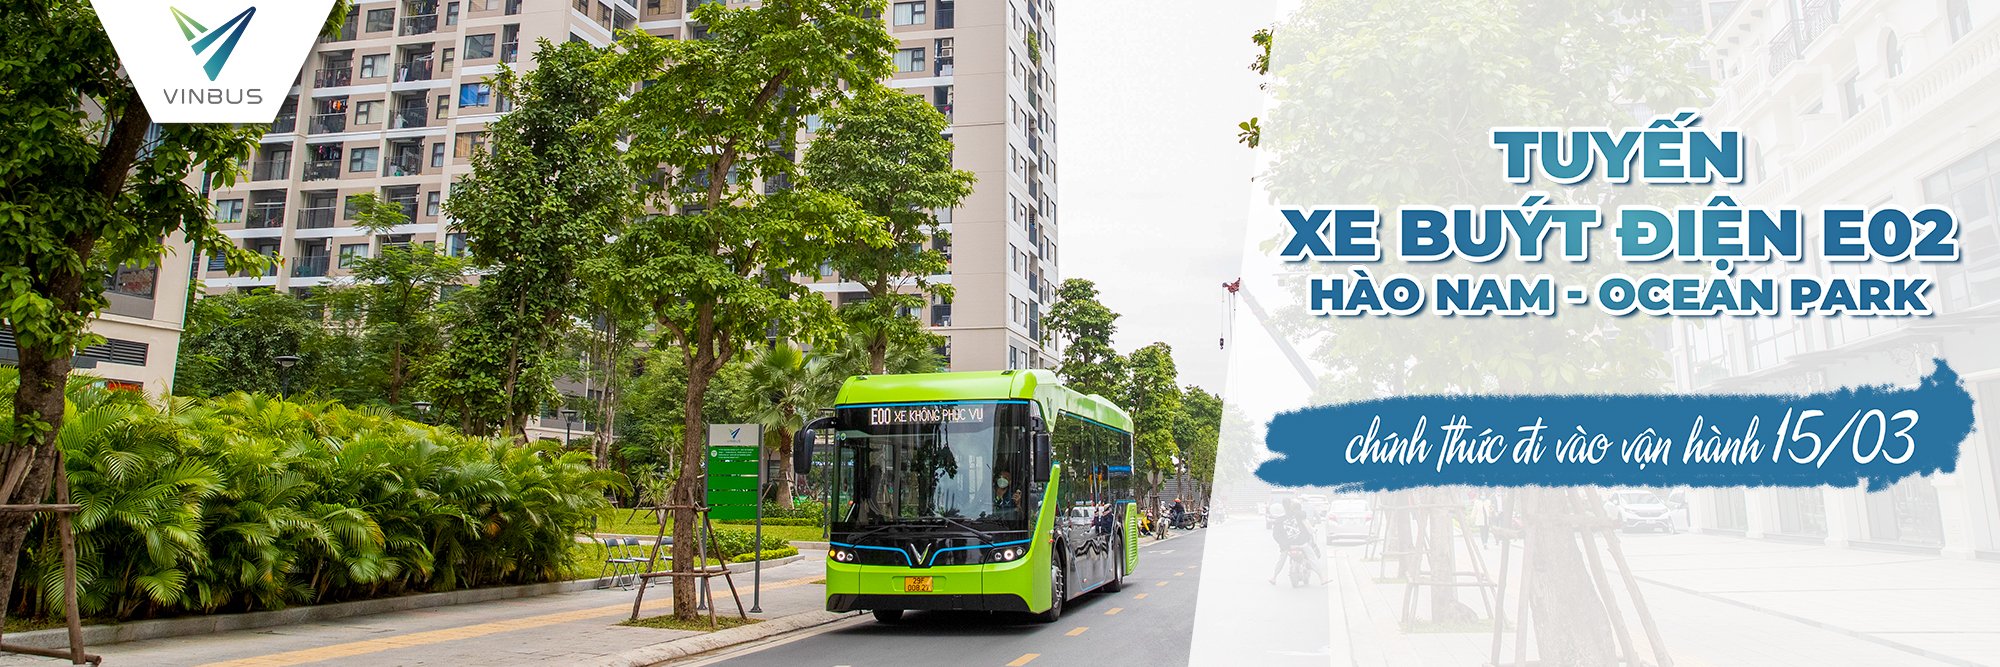 VinBus chính thức vận hành tuyến xe buýt điện E02 Hào Nam – KĐT Ocean Park